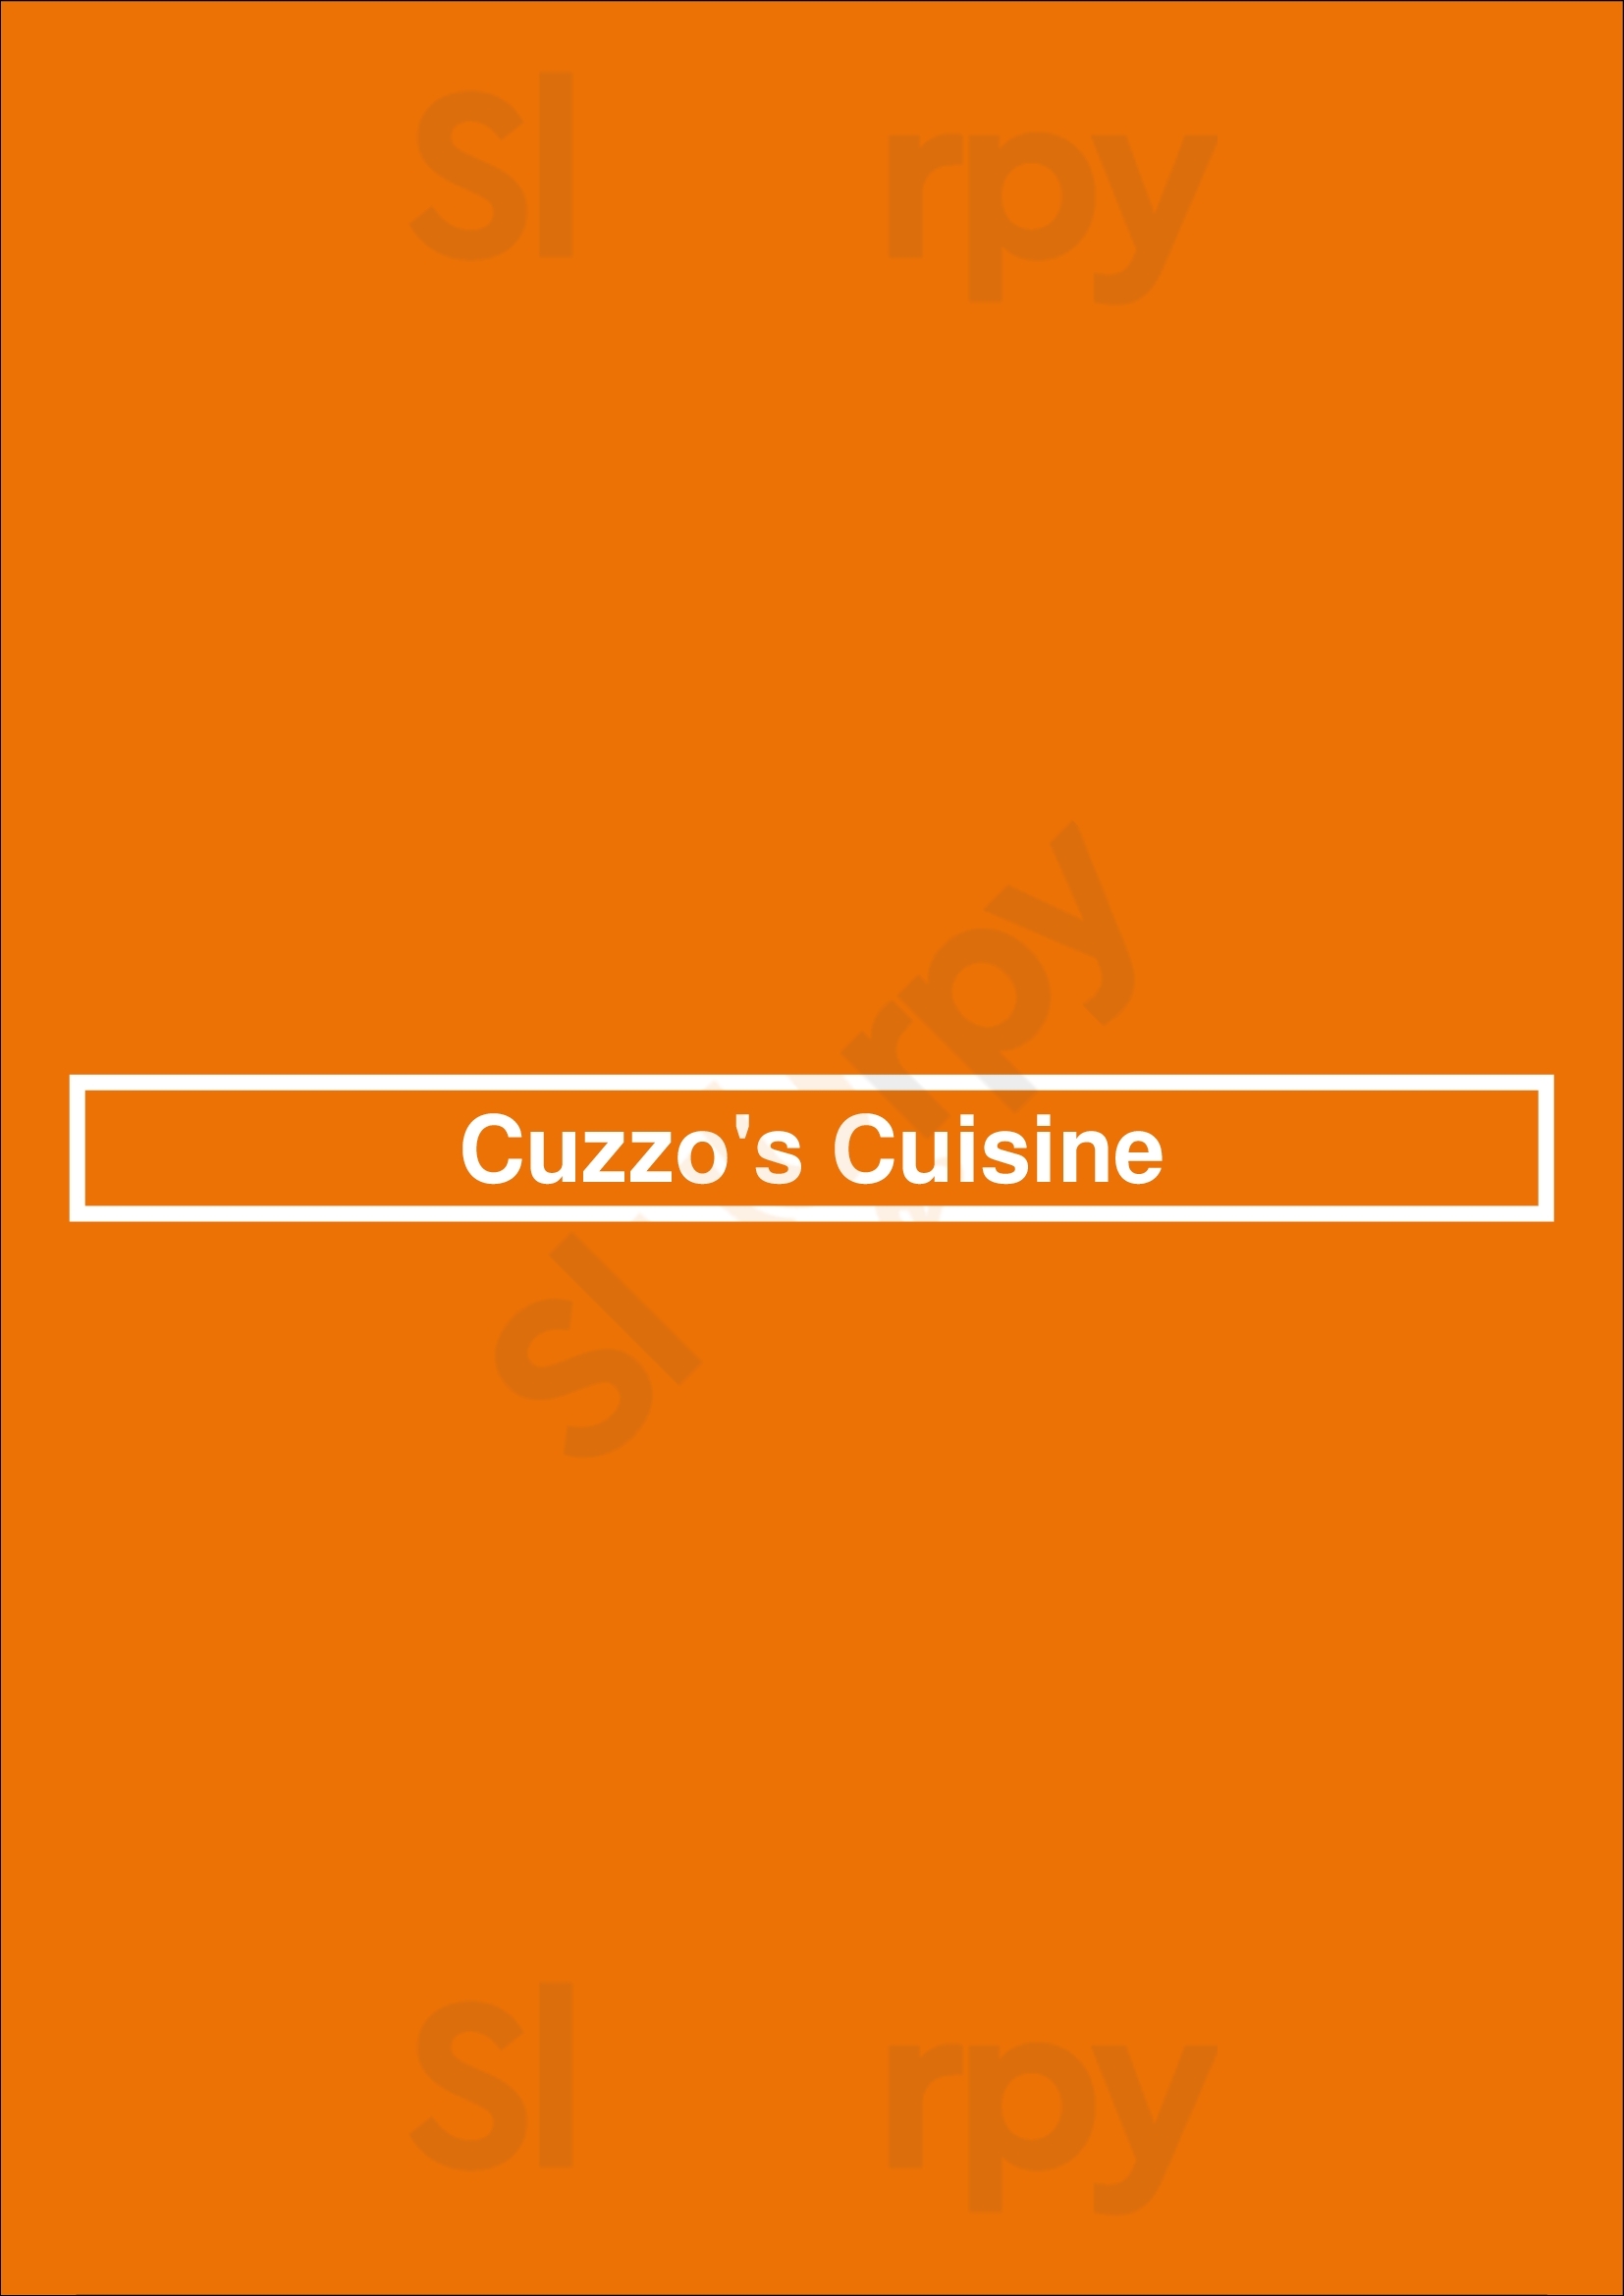 Cuzzo's Cuisine Charlotte Menu - 1